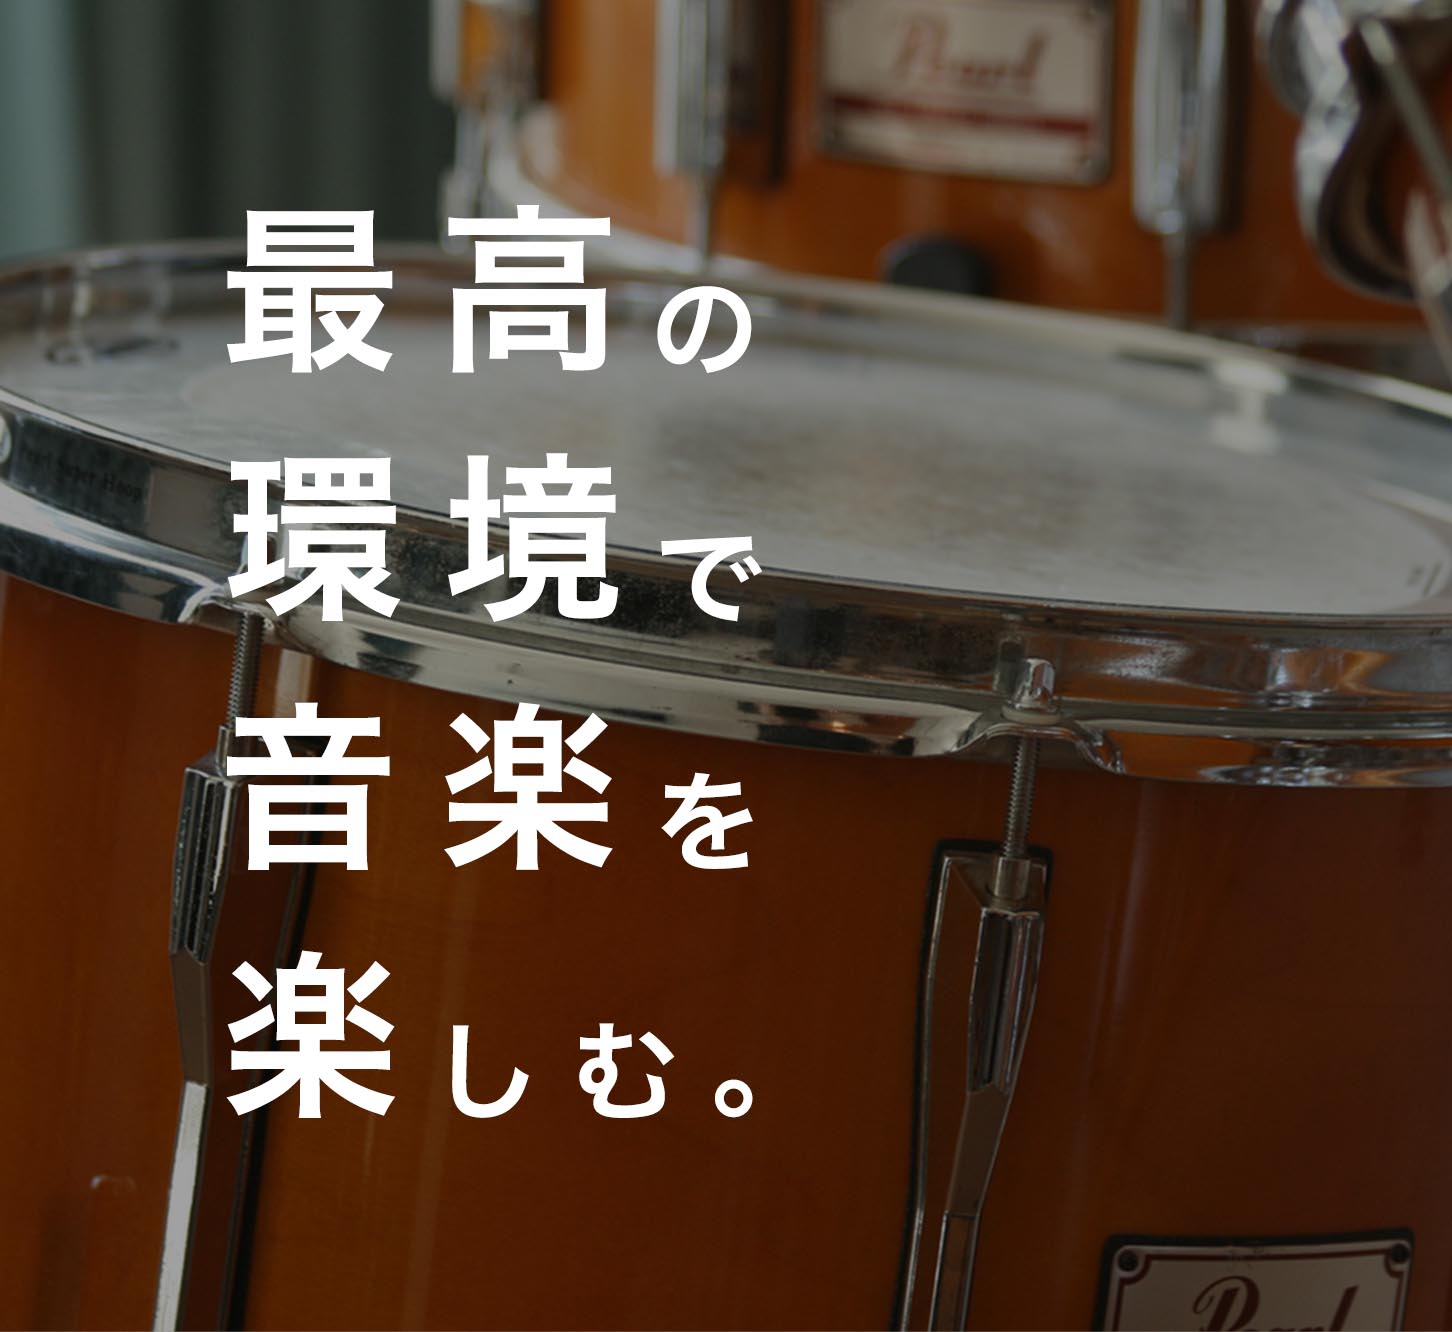 sp ドラム